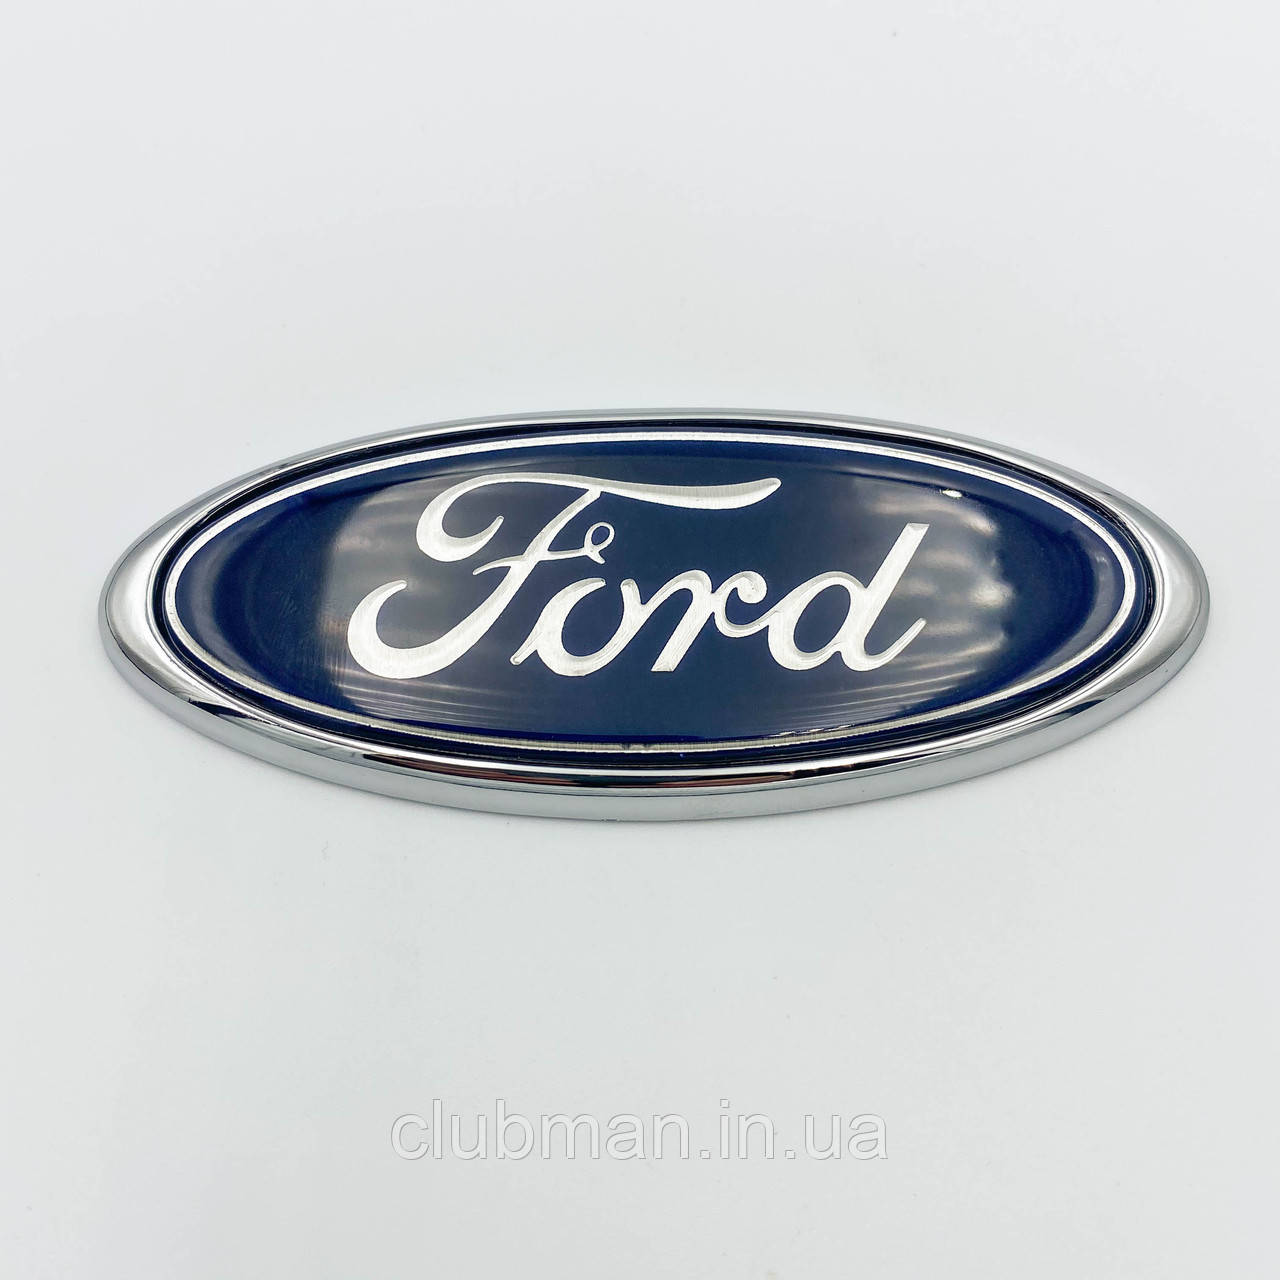 Емблема решітки радіатора багажника FORD (Форд) 115х45 мм Fiesta, Mondeo, Transit, Escort